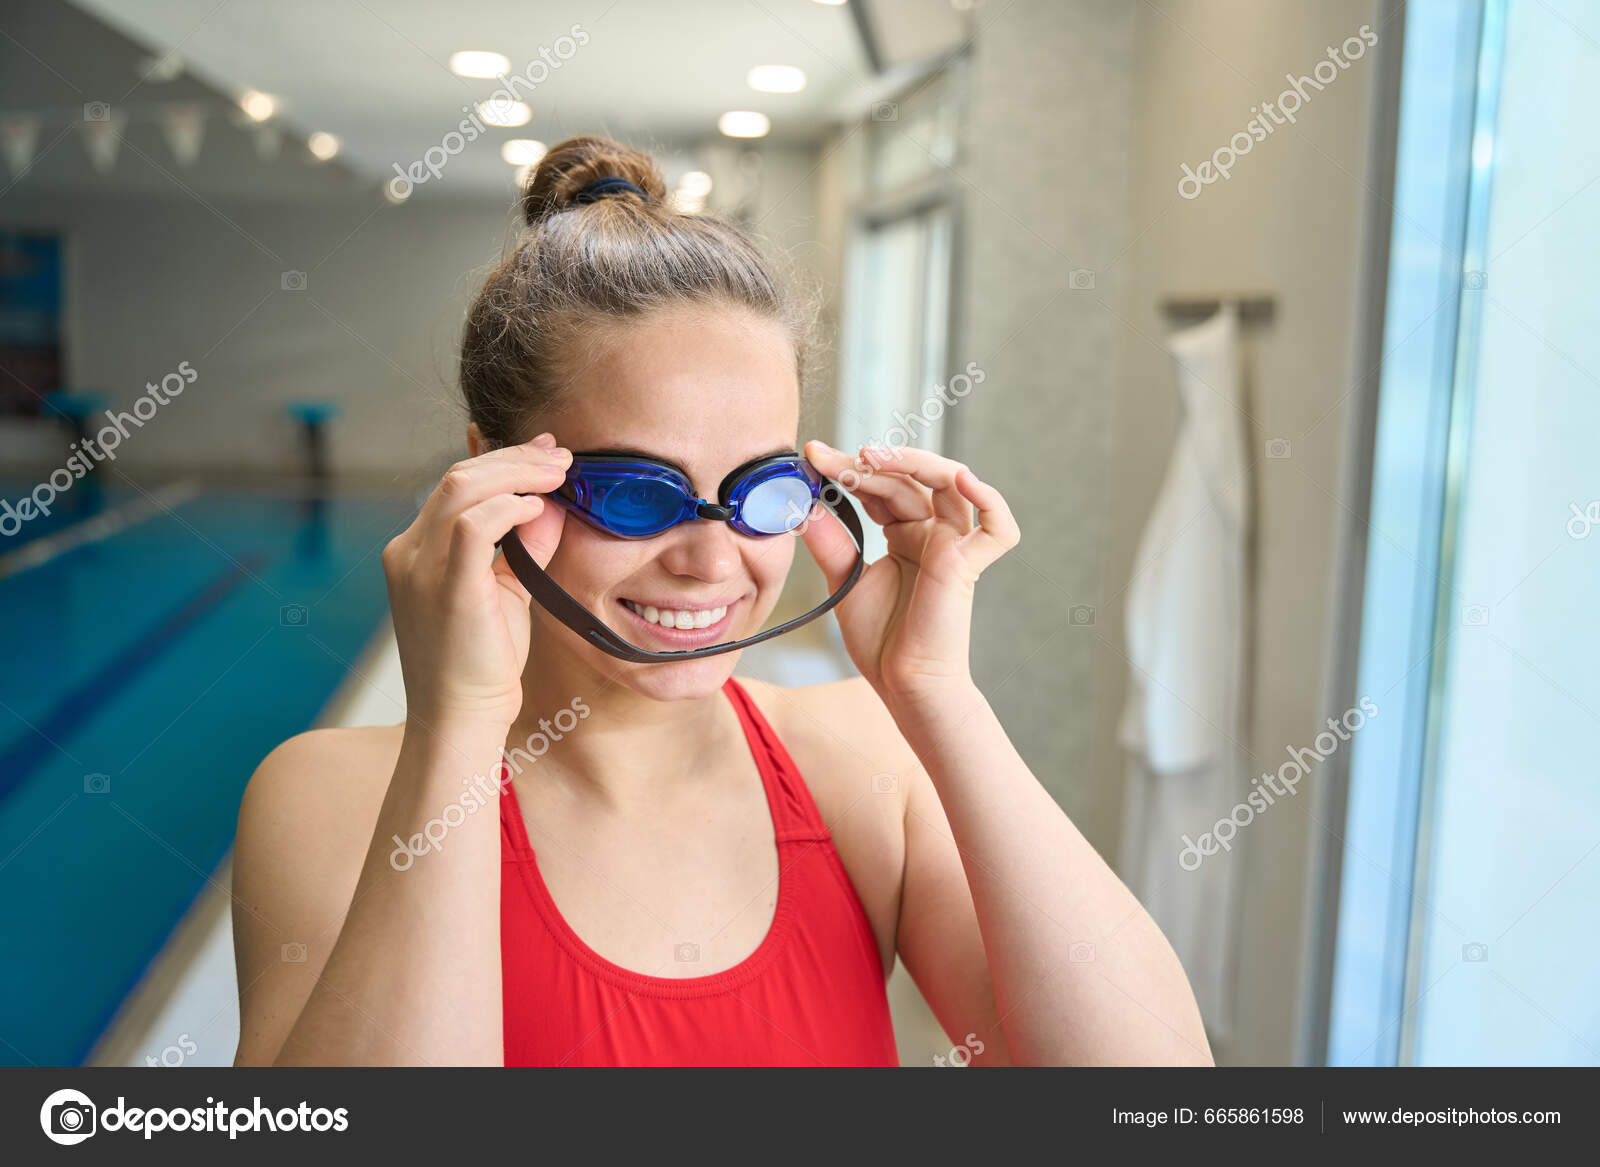 Mujer Feliz Traje Baño Sosteniendo Gafas Preparándose Para Nadar Piscina:  fotografía de stock © svitlanahulko85.gmail.com #665861598